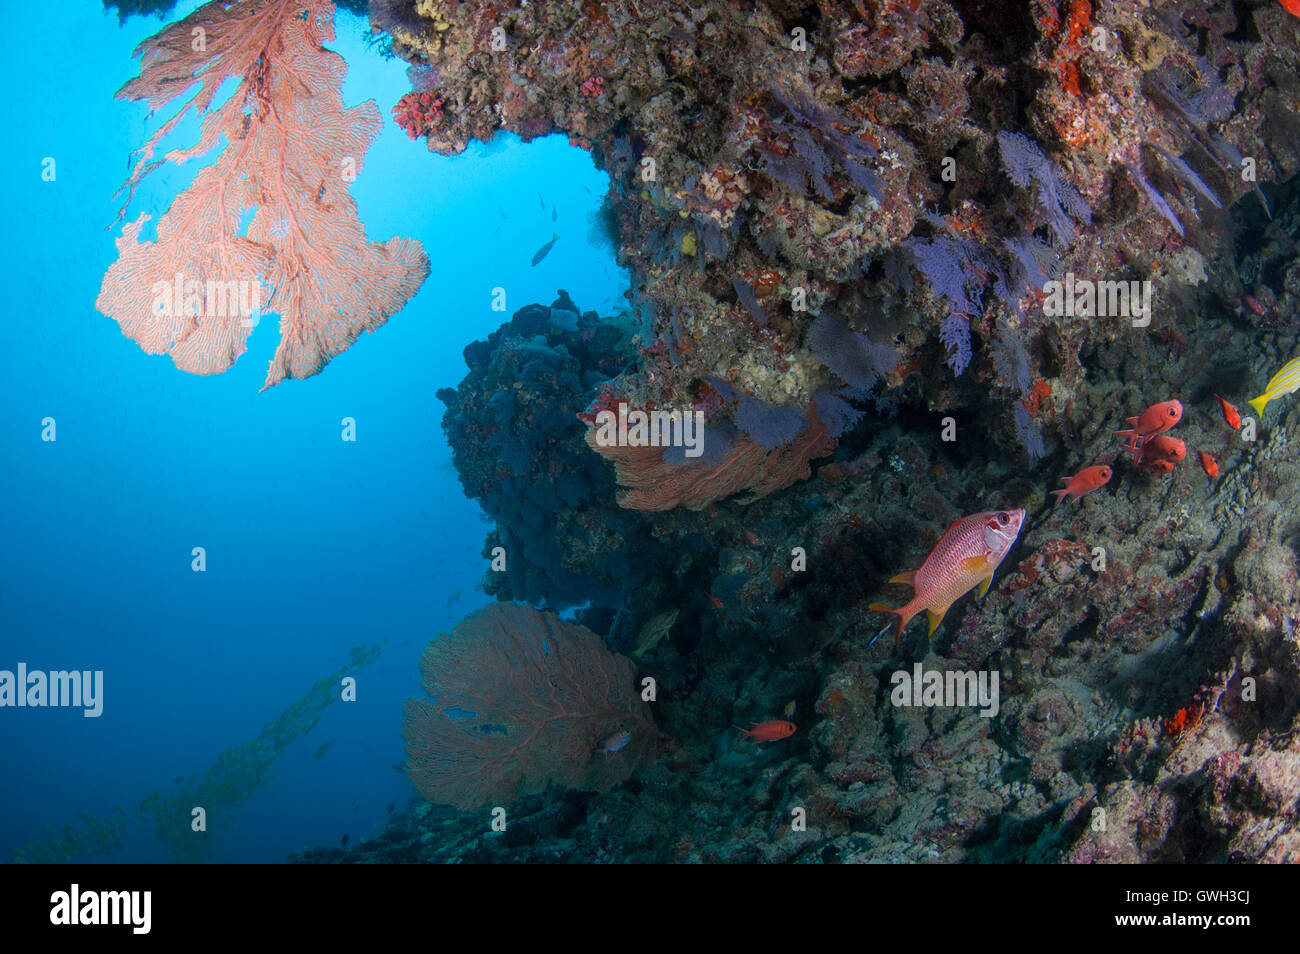 Pared de arrecifes de coral con una mezcla de coral ventilador gorgonias y corales blandos. Foto de stock